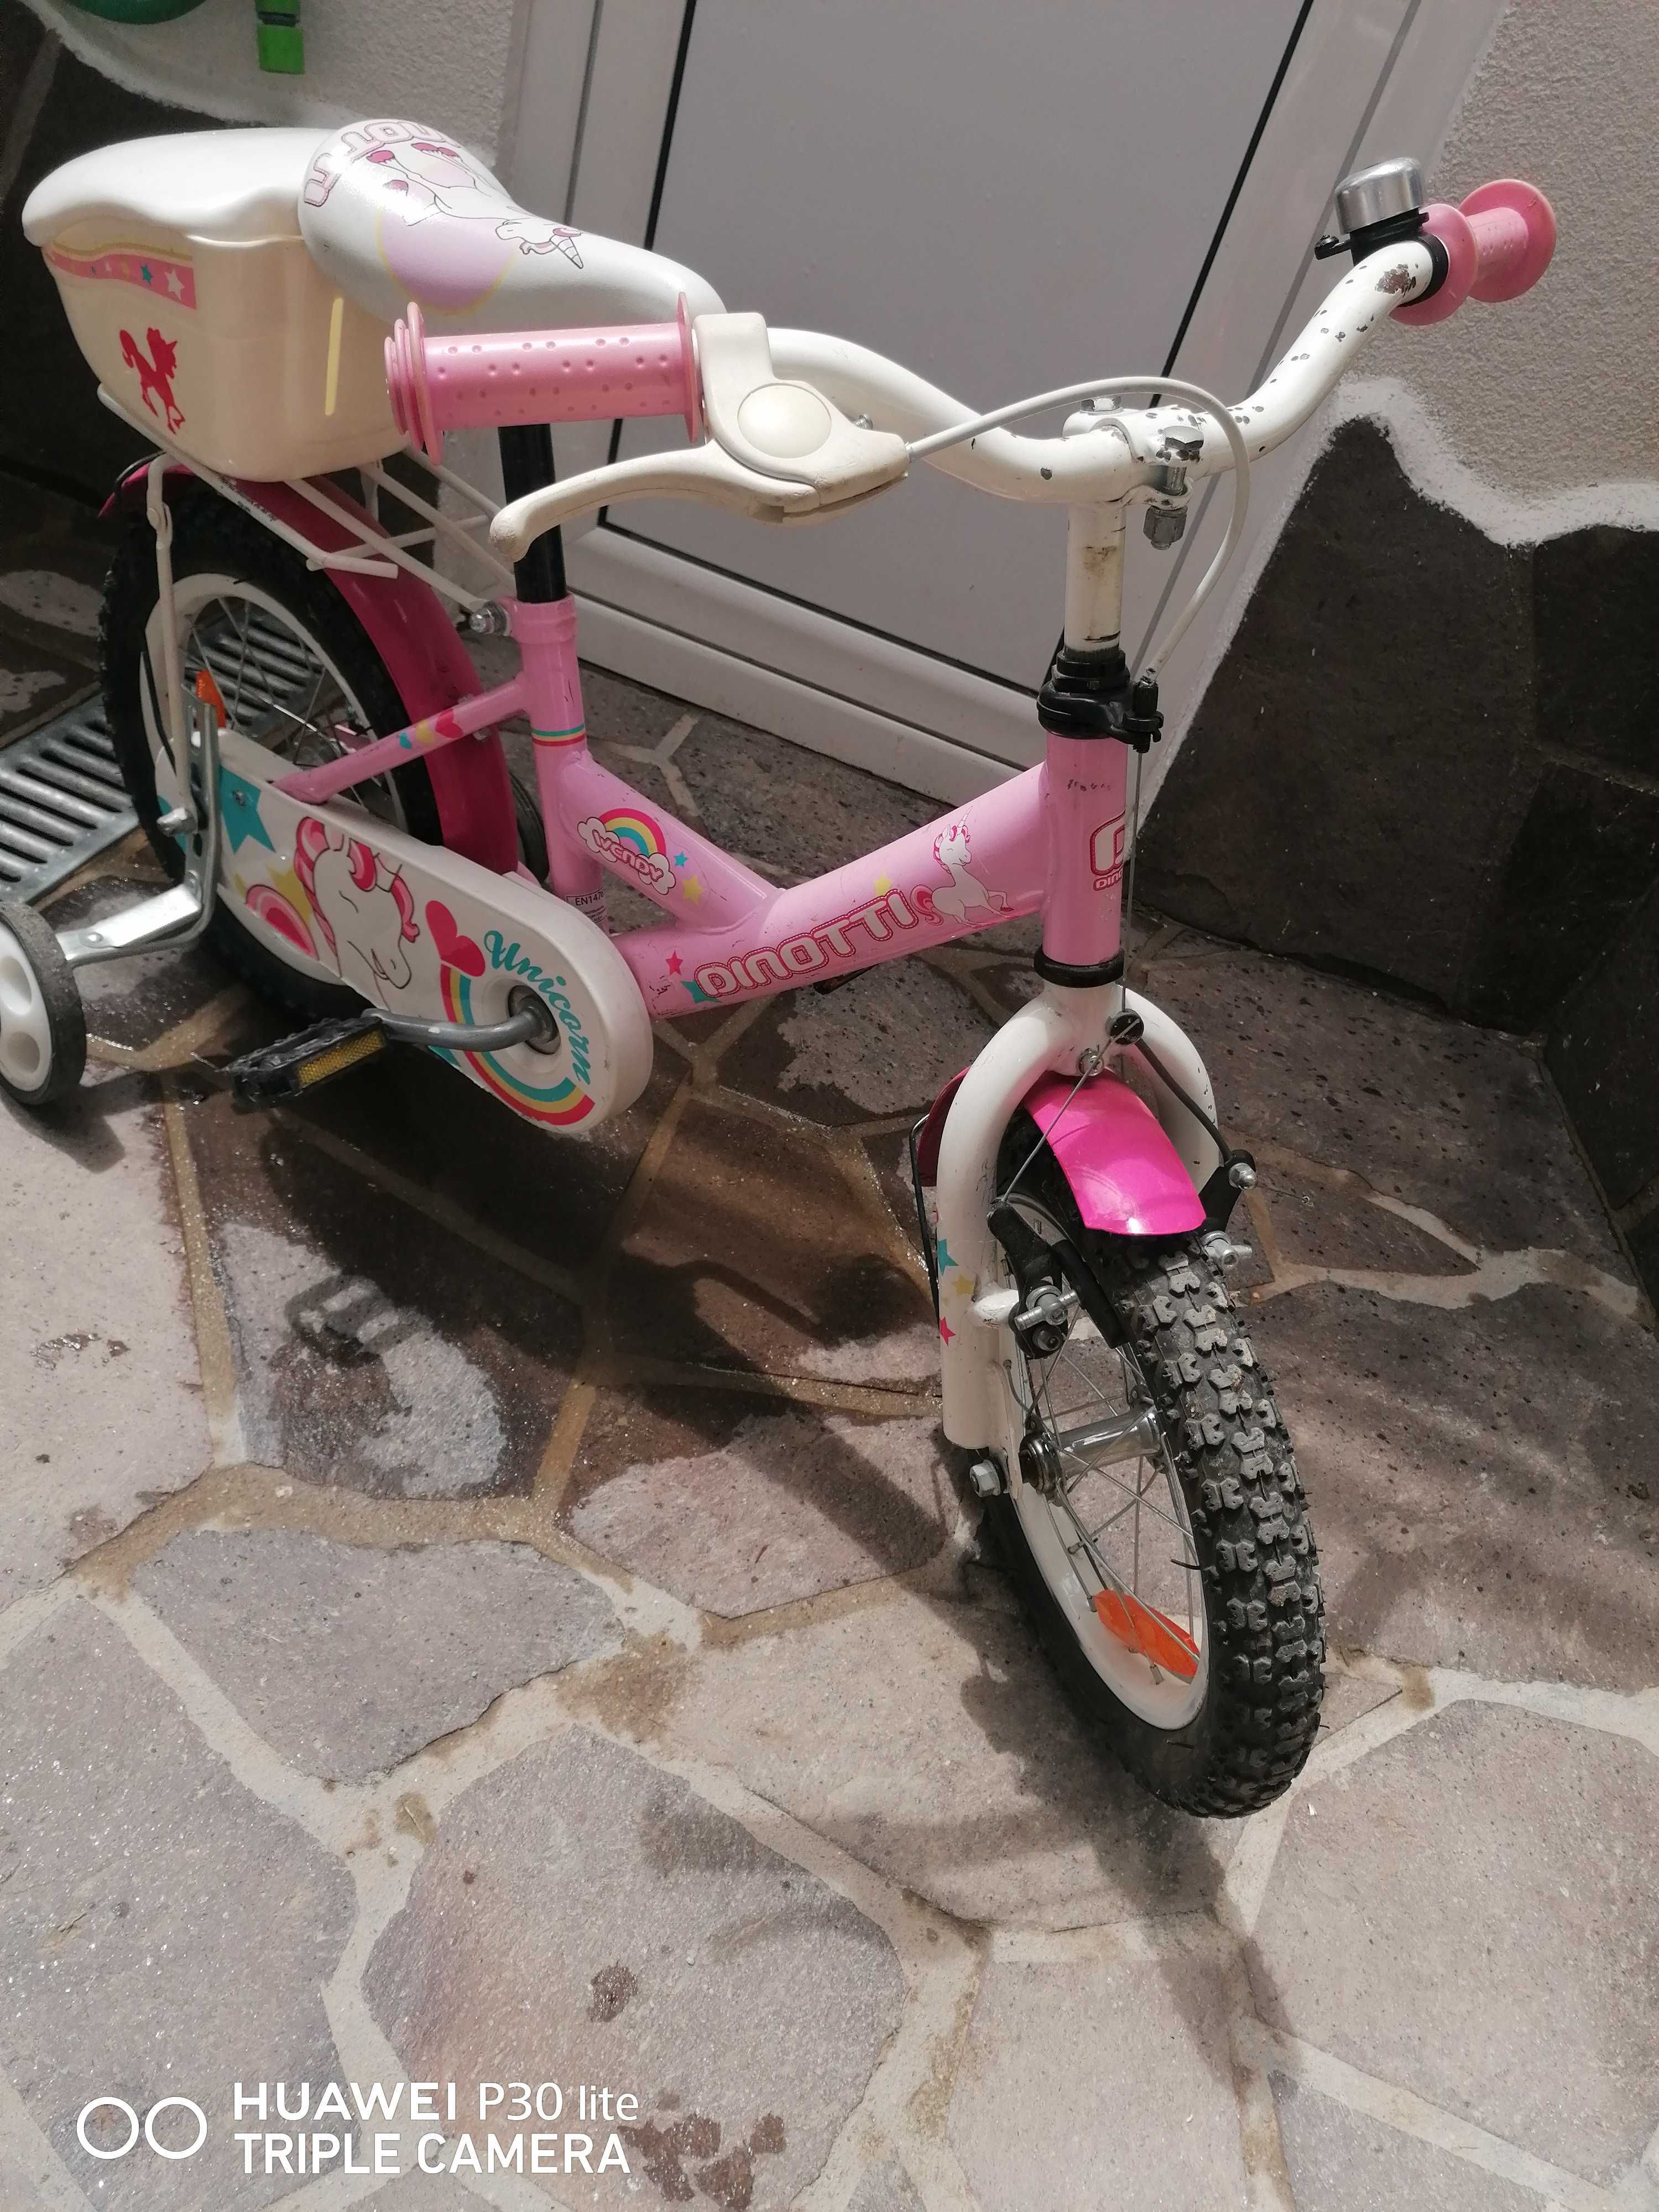 Велосипед за дете